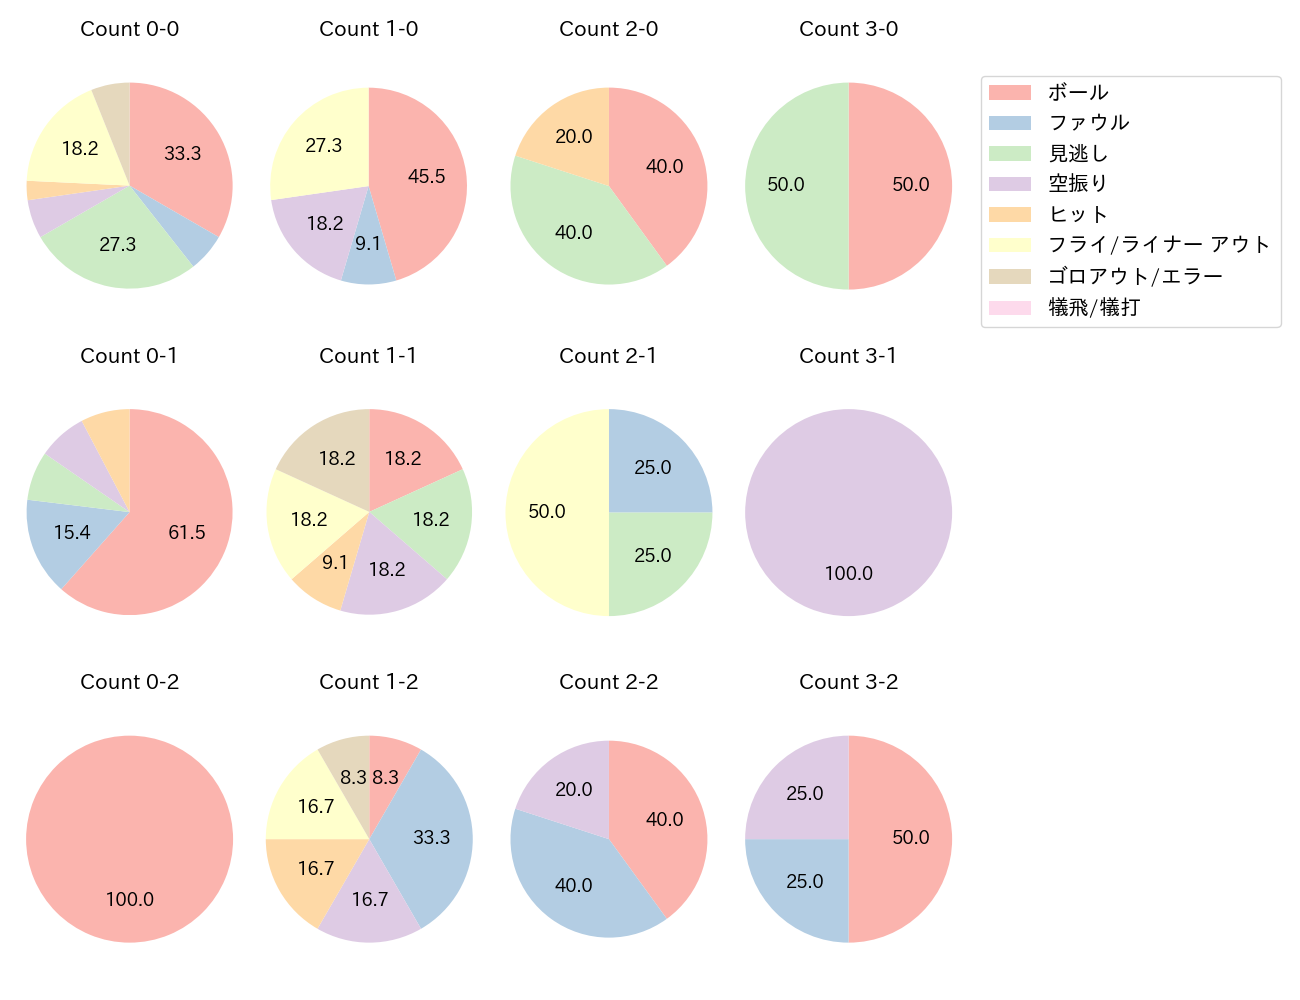 大山 悠輔の球数分布(2021年5月)